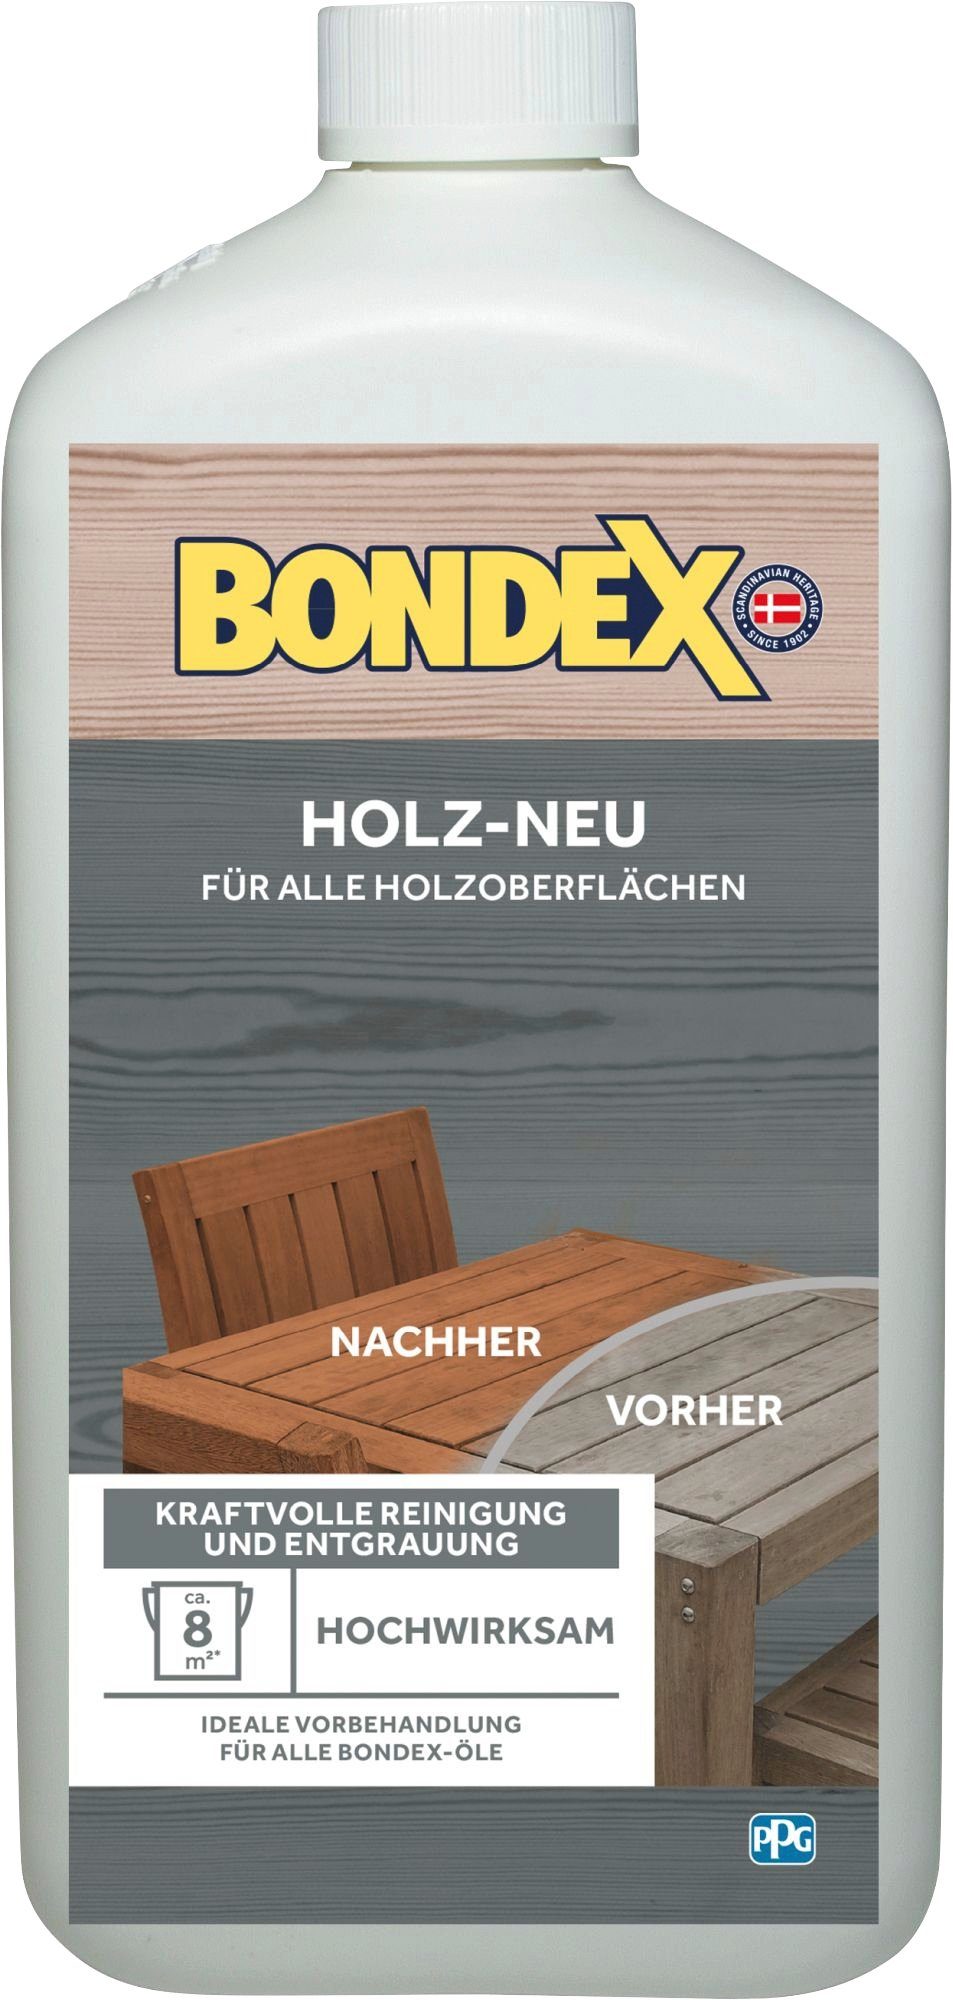 Bondex Farben online kaufen | OTTO